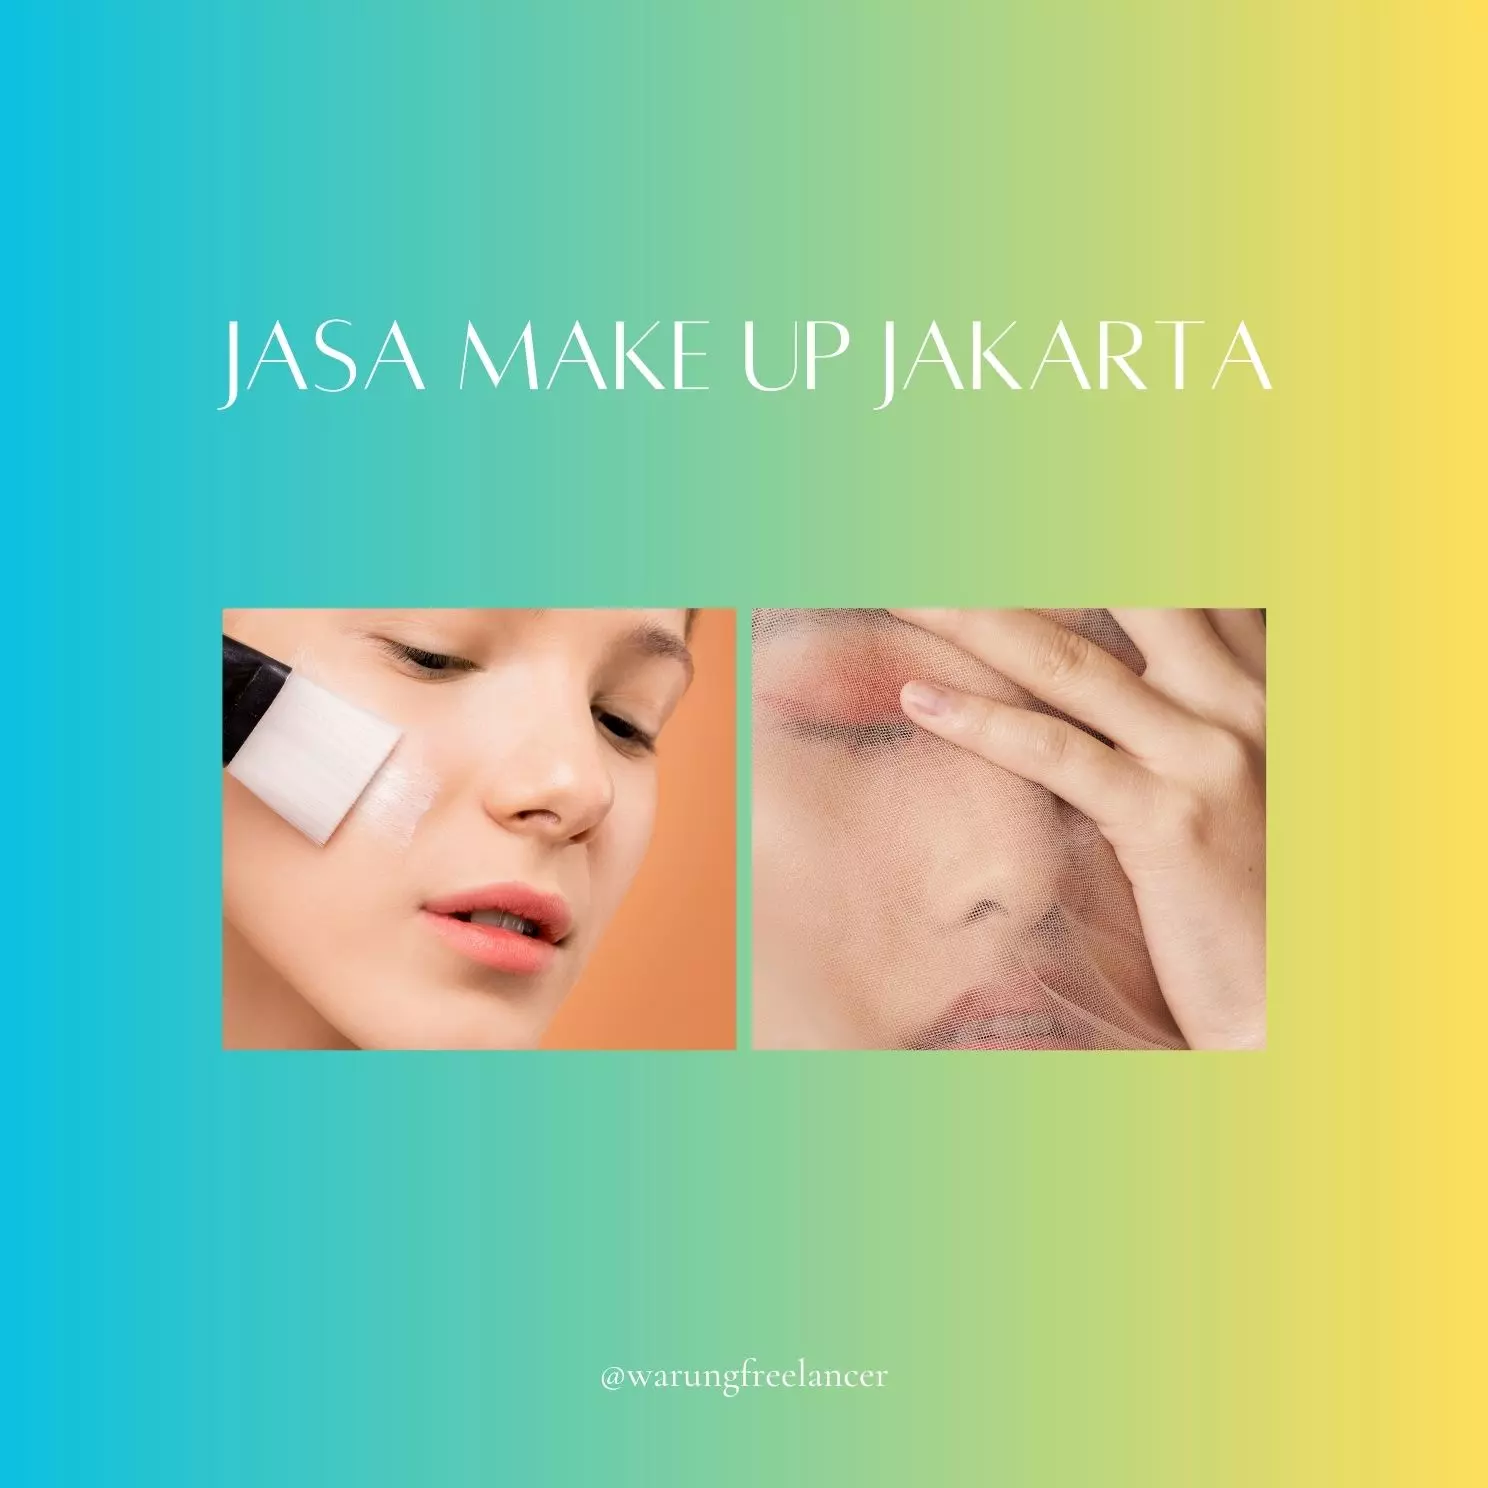 Jasa Make Up Jakarta